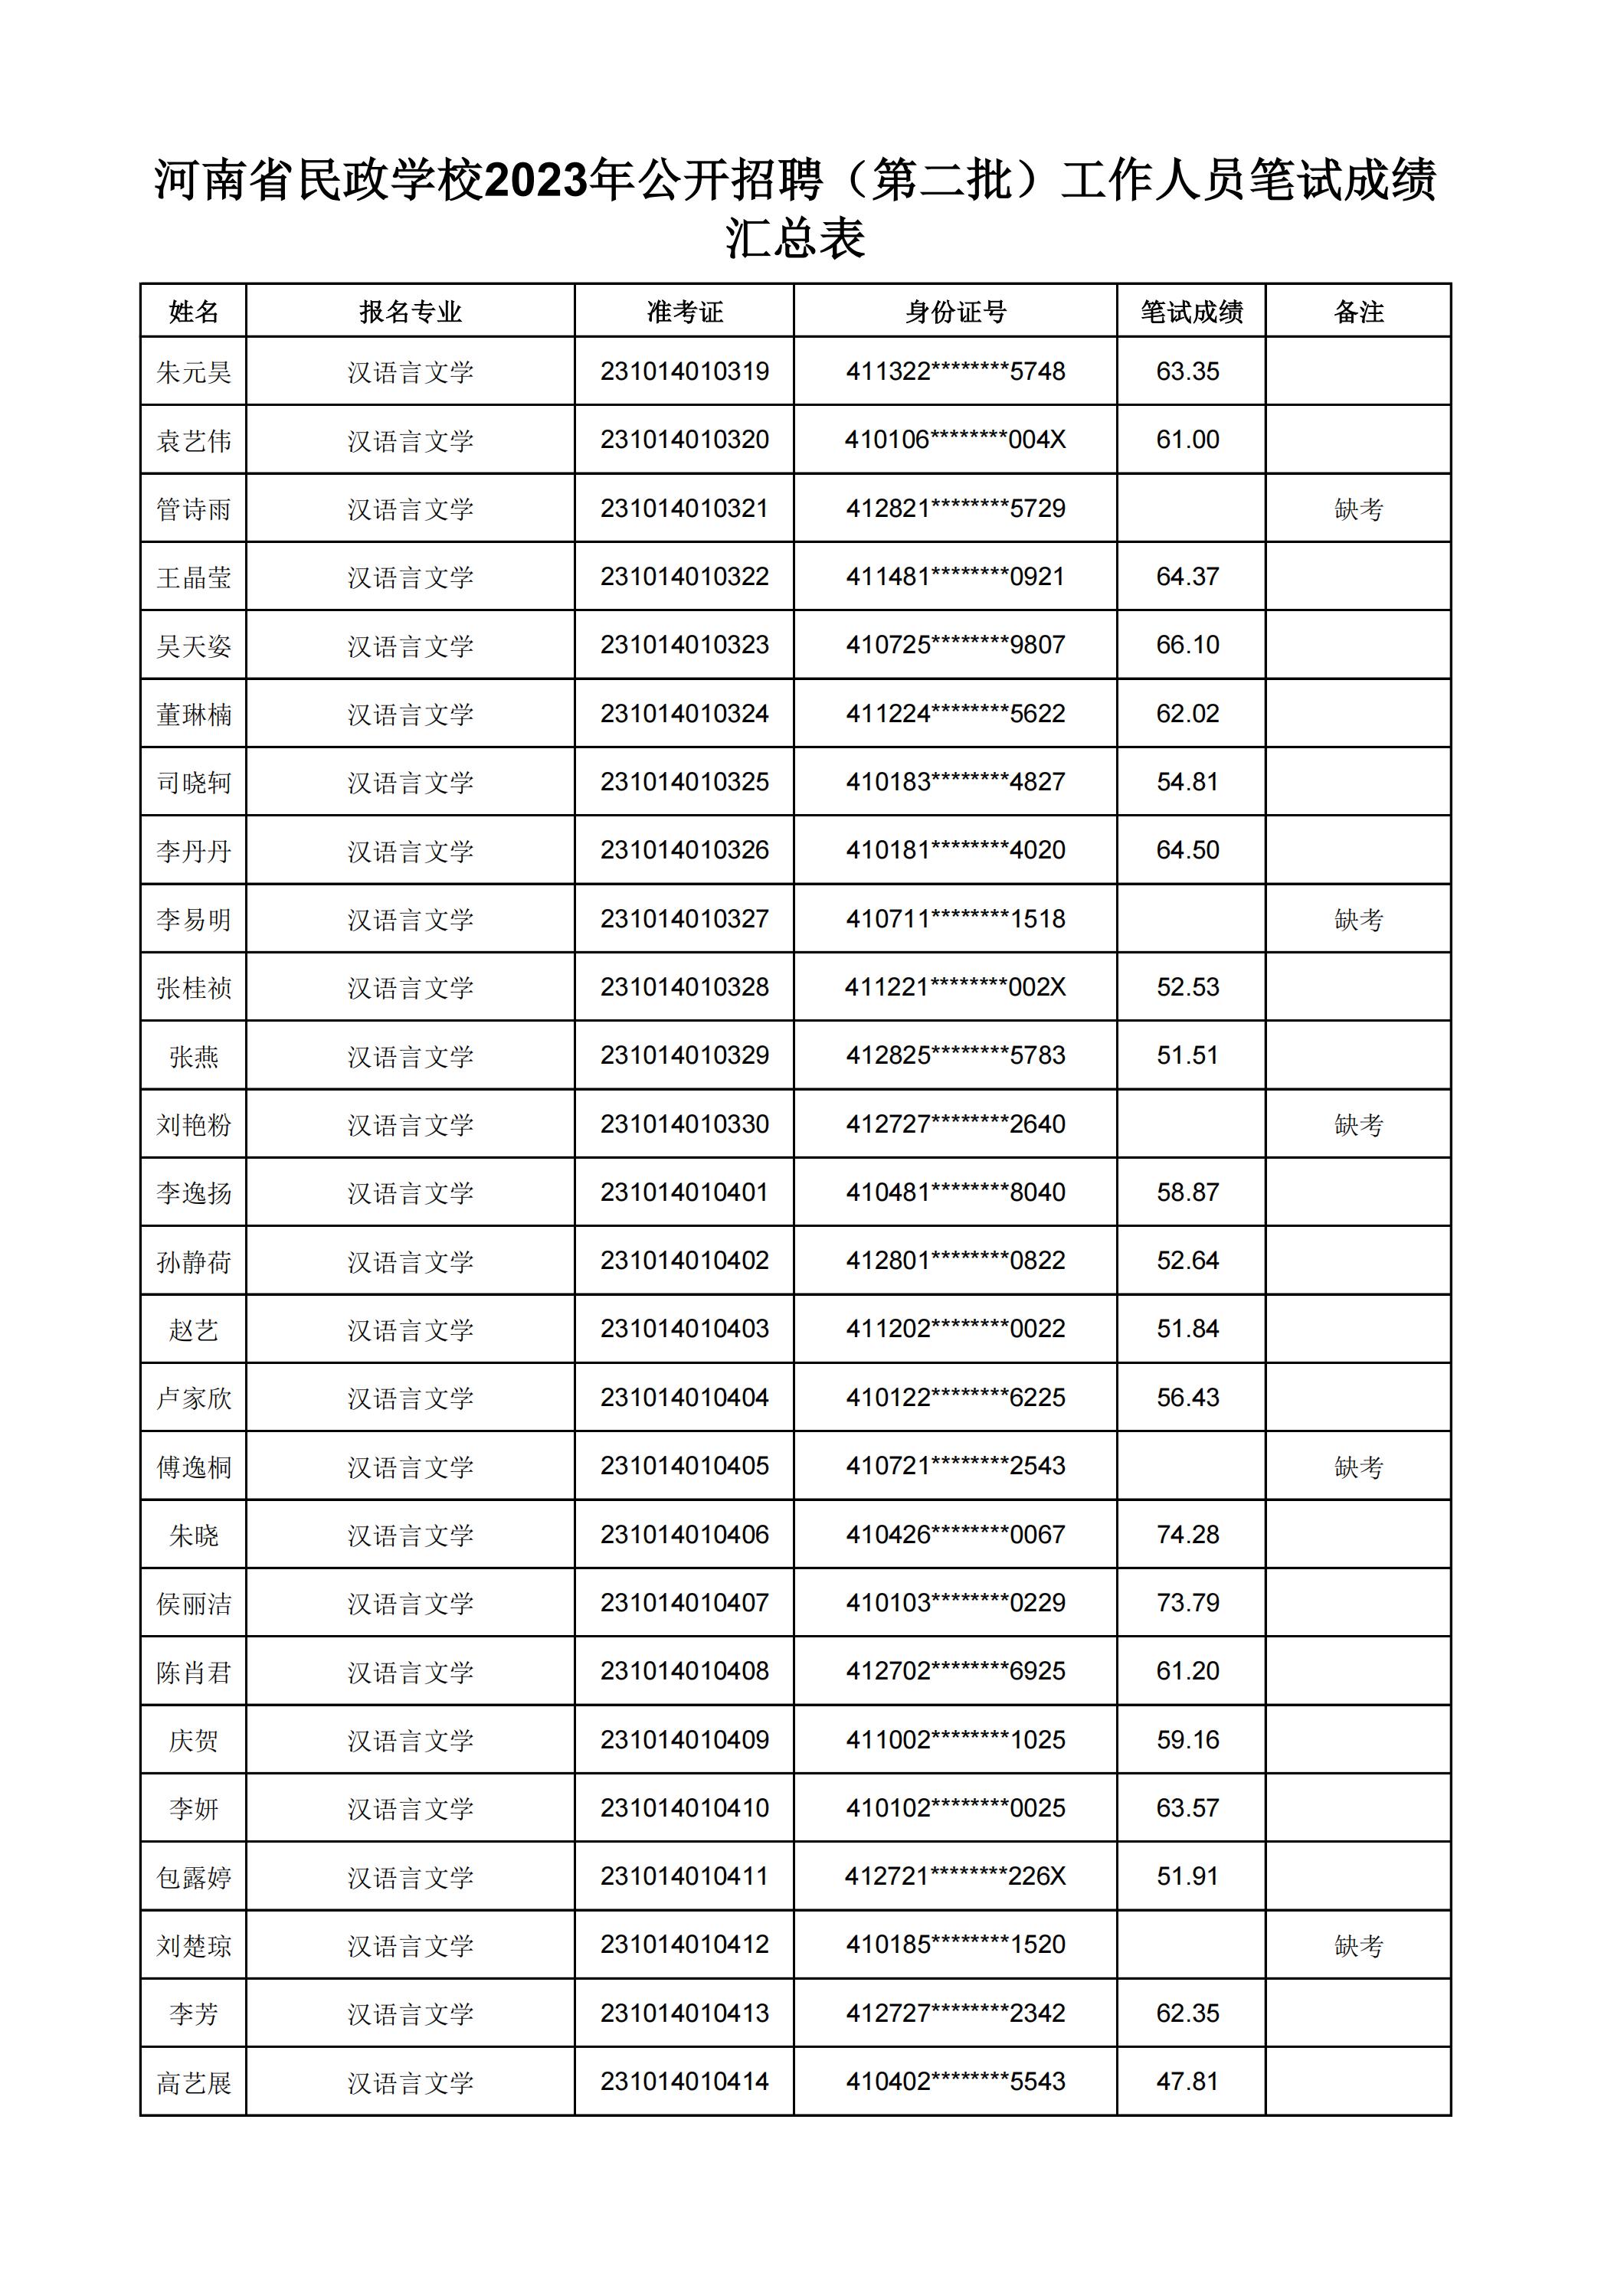 河南省民政学校2023年公开招聘（第二批）工作人员笔试成绩汇总表(2)_03.jpg